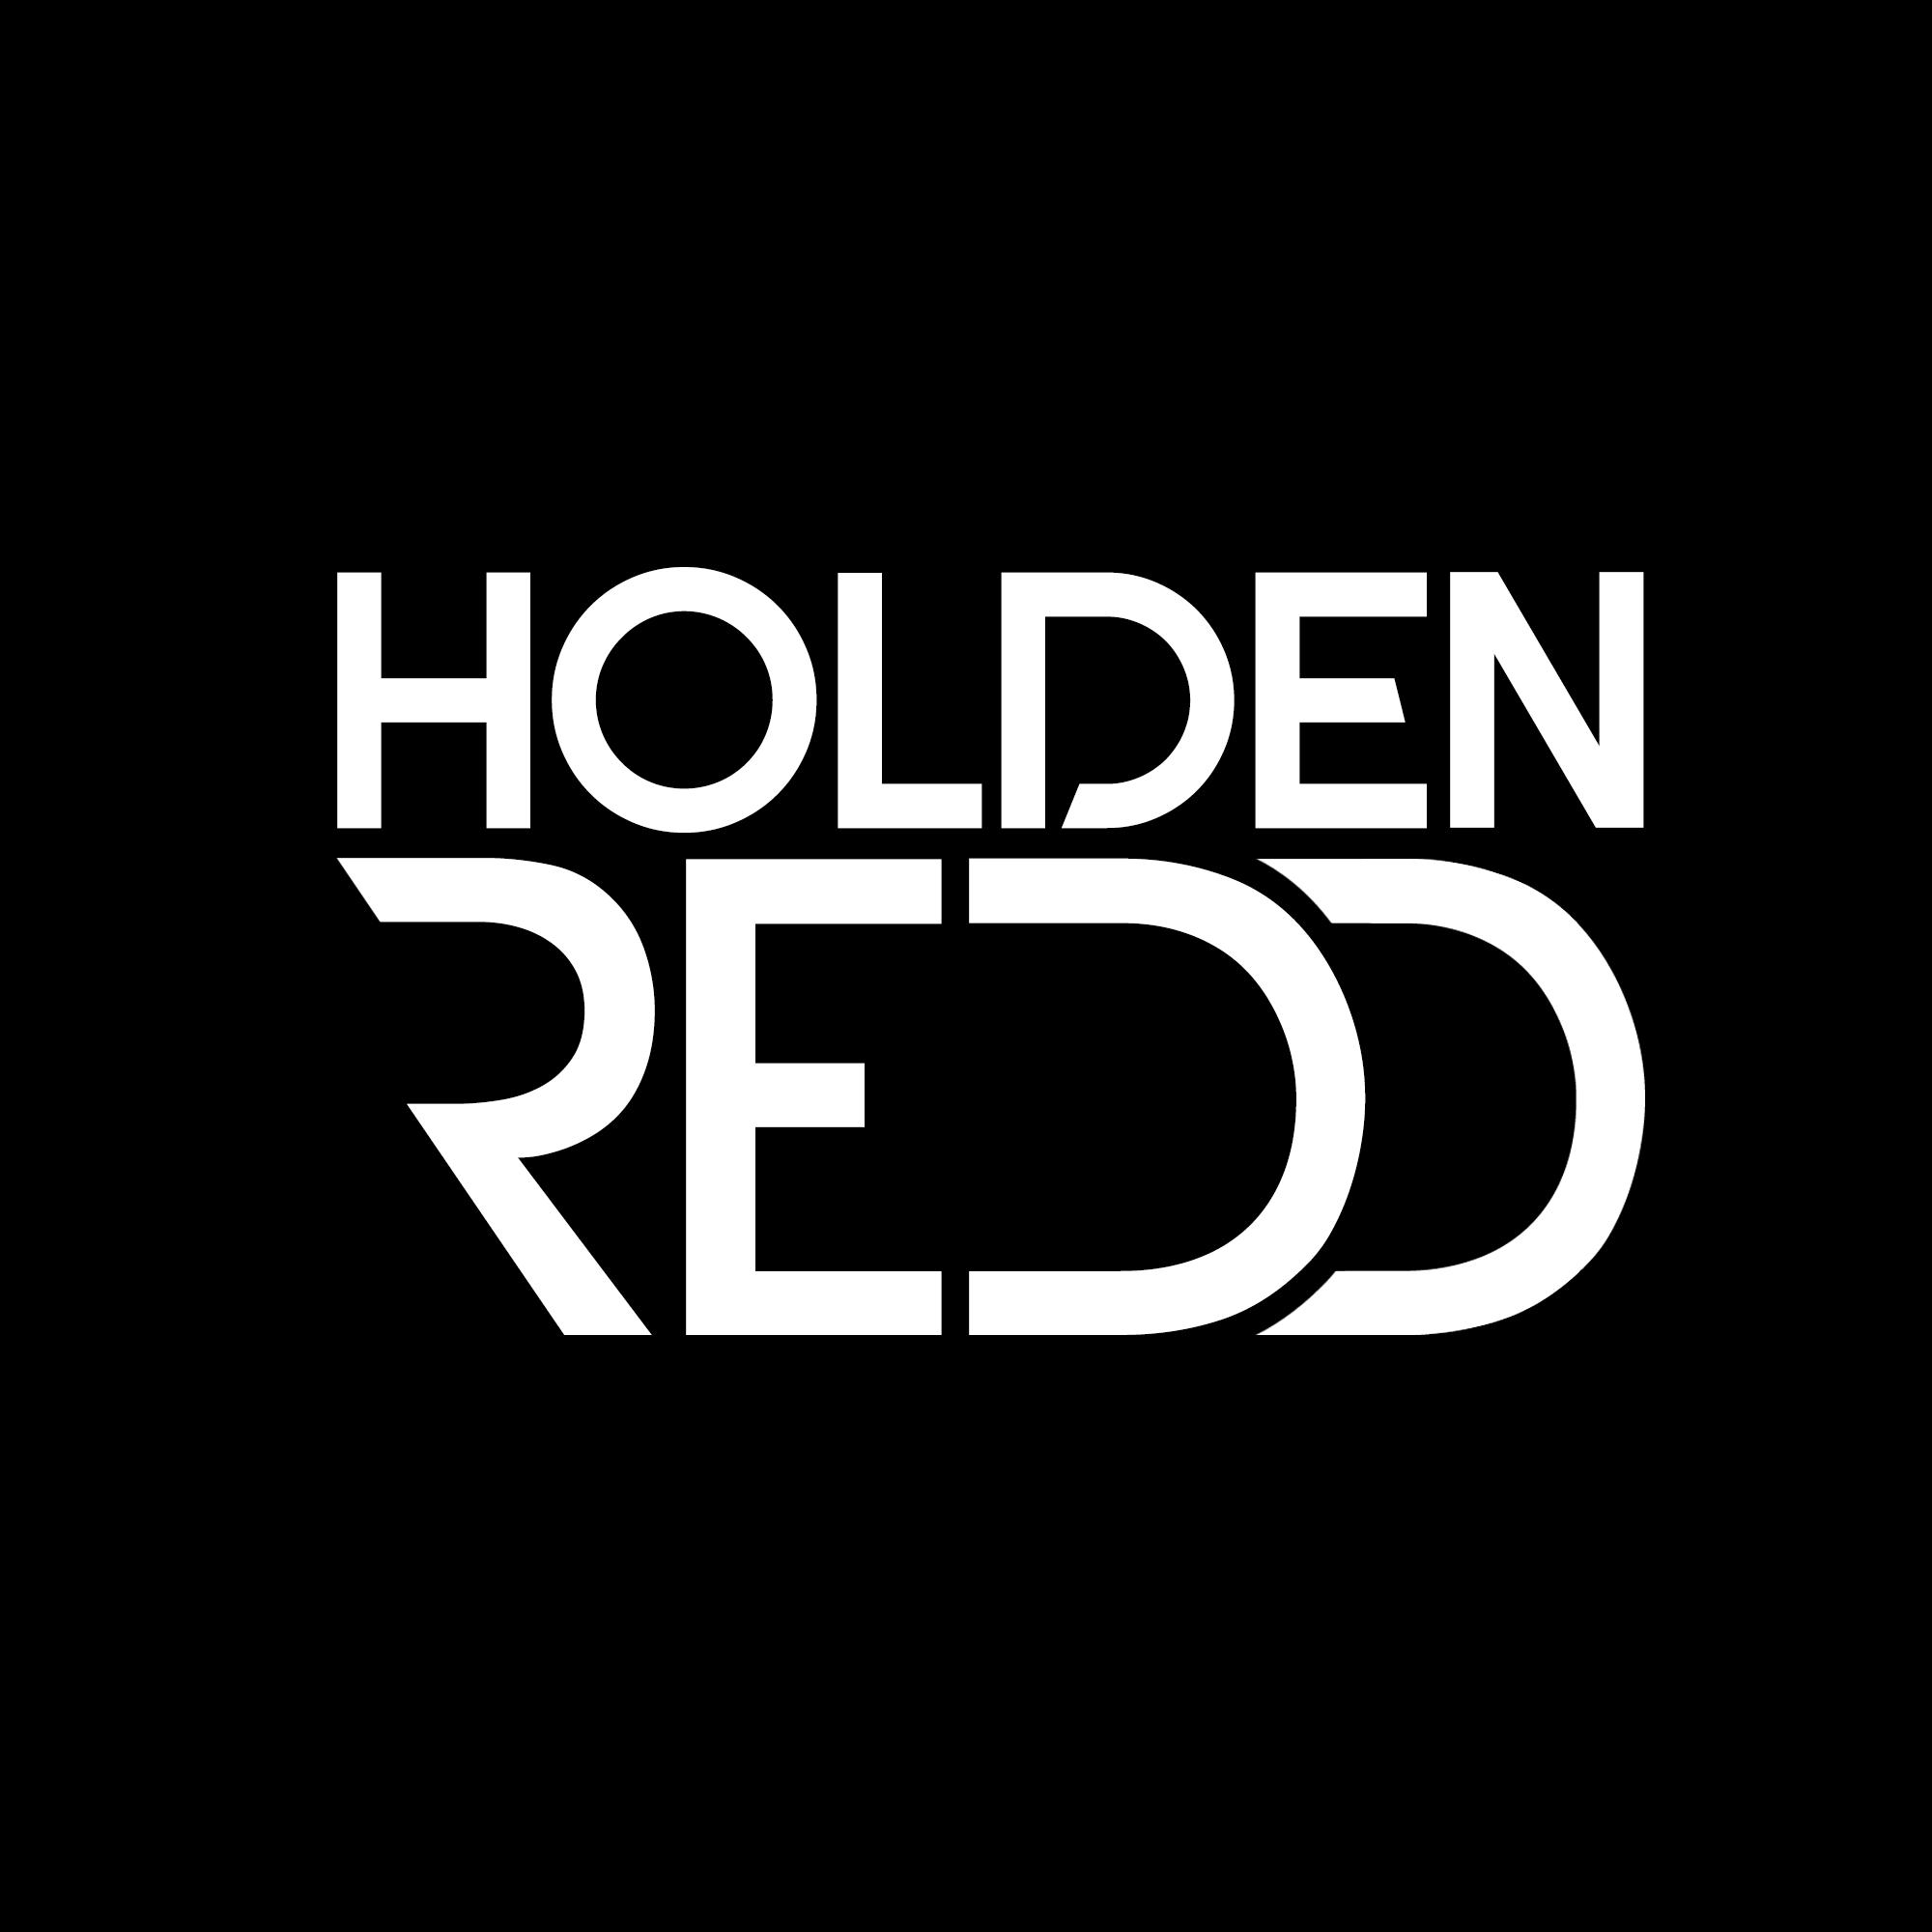 Holden Redd